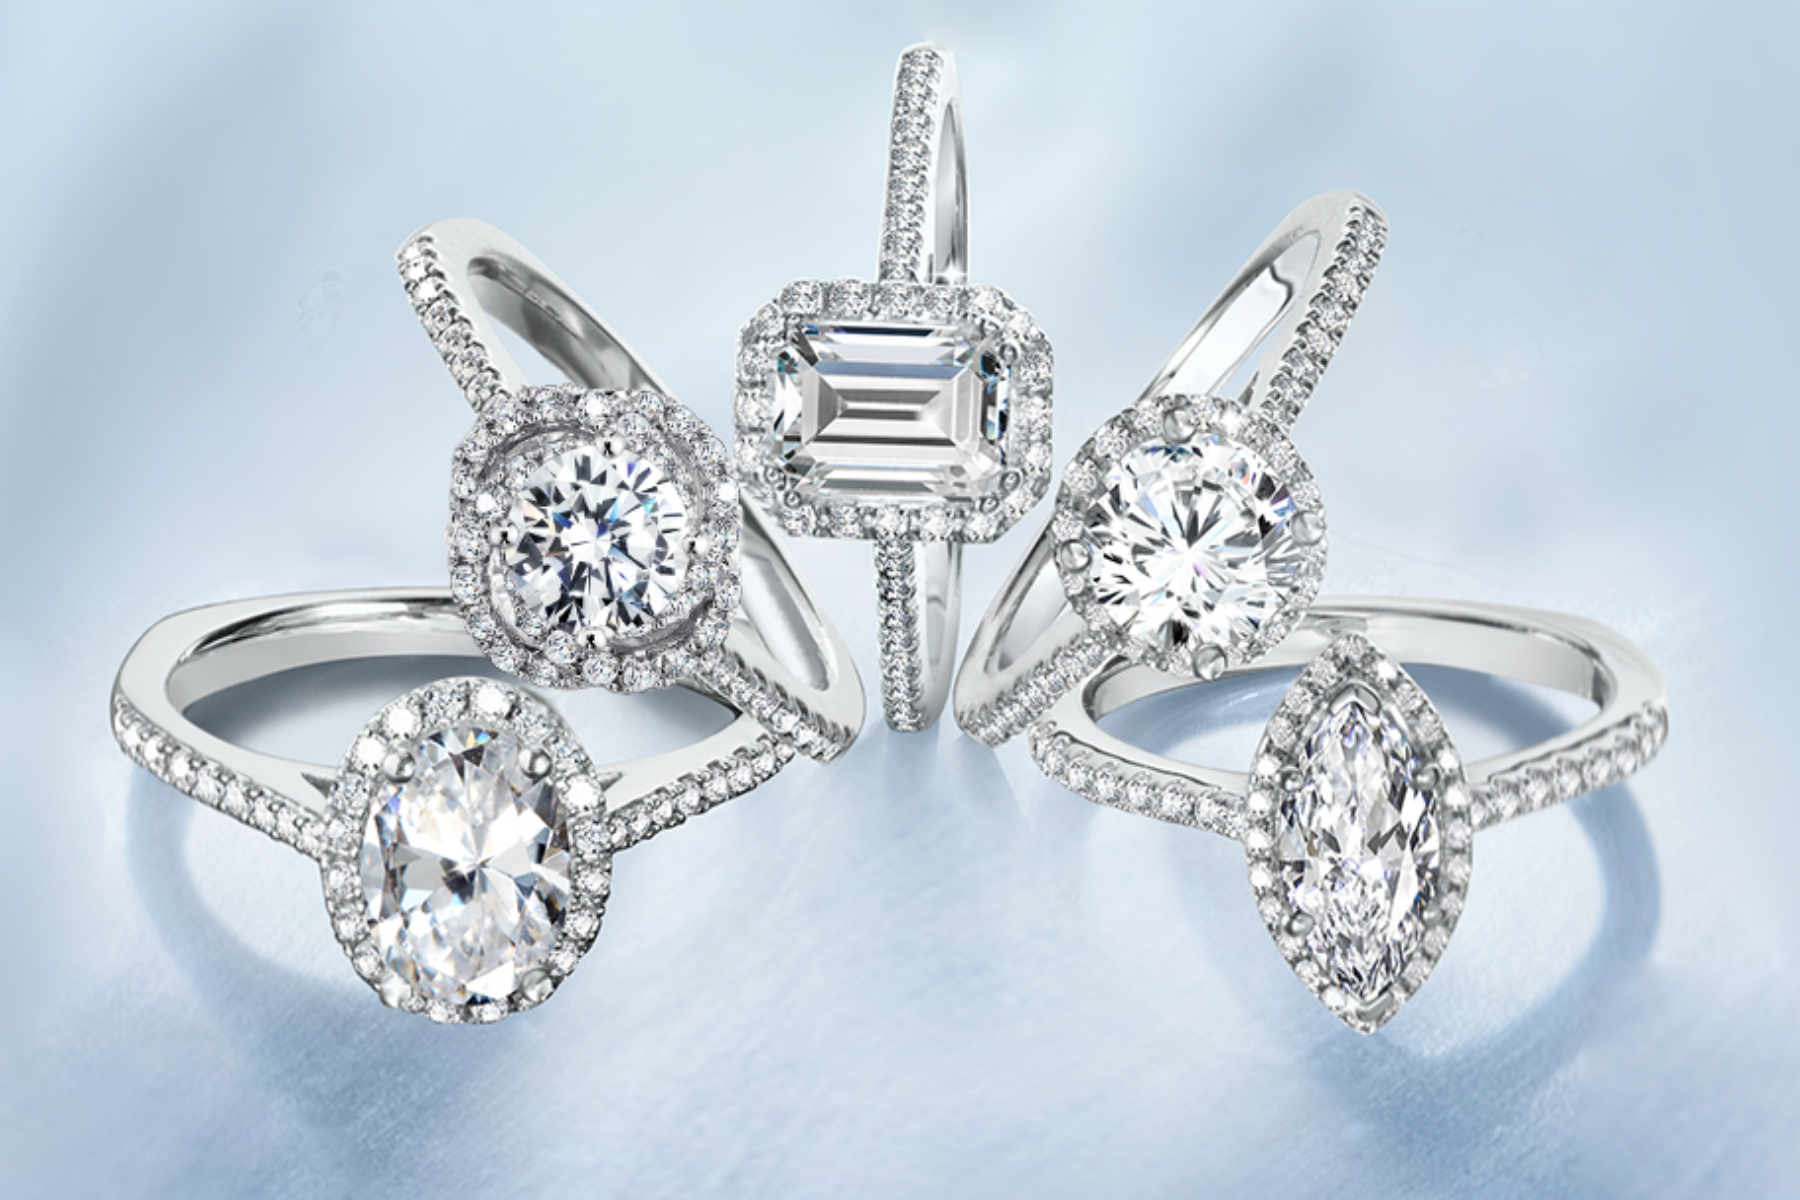 Five distinct diamond designs for classic halo rings